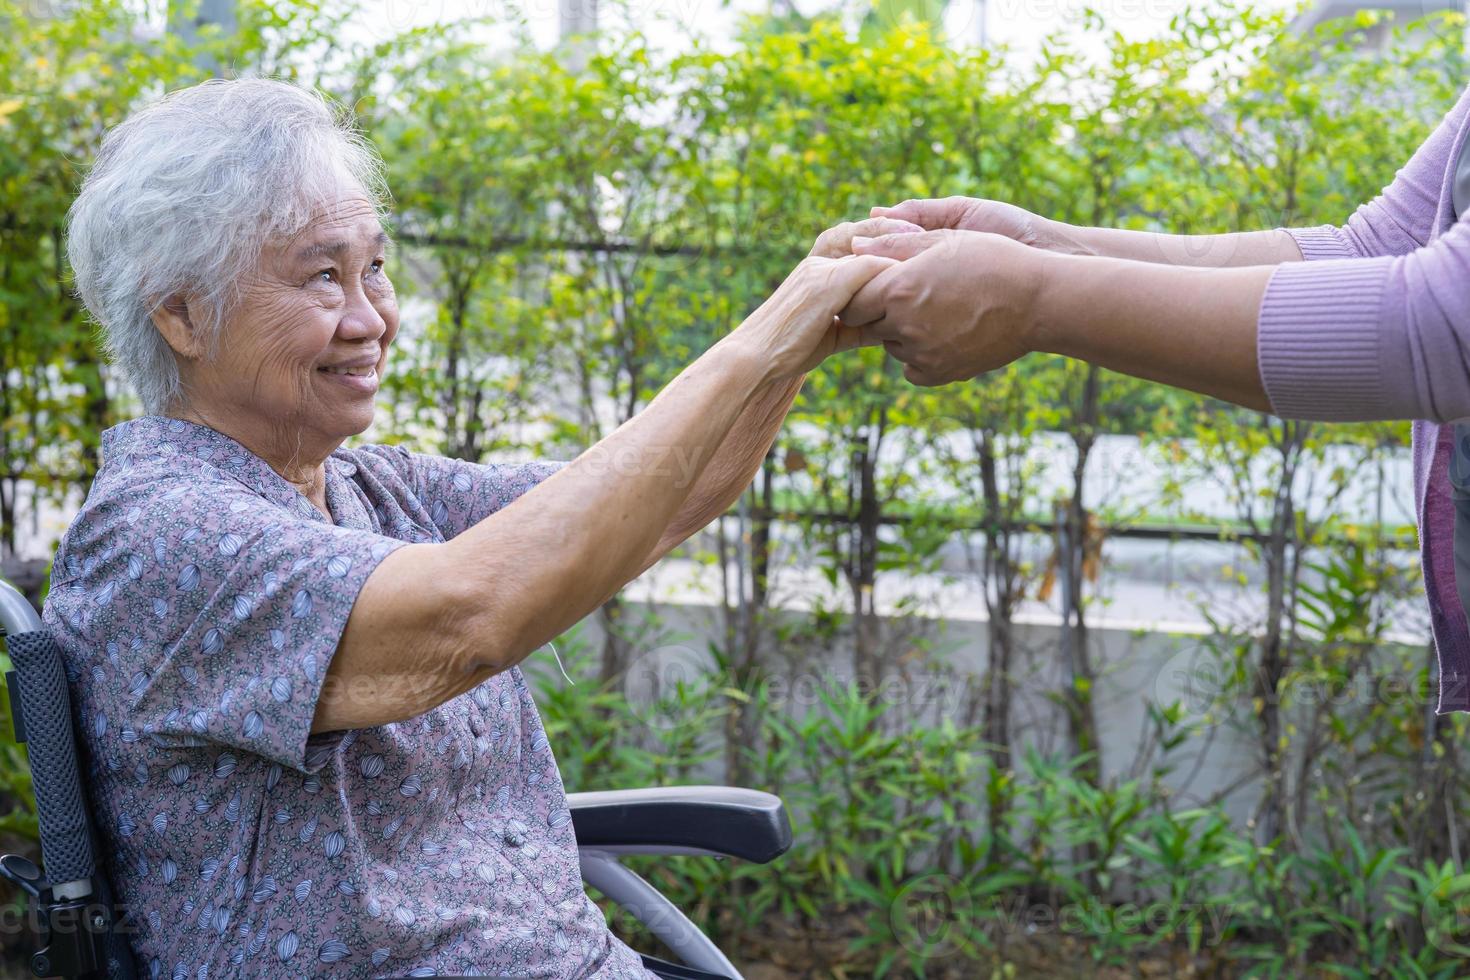 Händchen haltend asiatische Senioren oder ältere Frauenpatienten mit Liebe, Sorgfalt, Ermutigung und Empathie im Park. foto